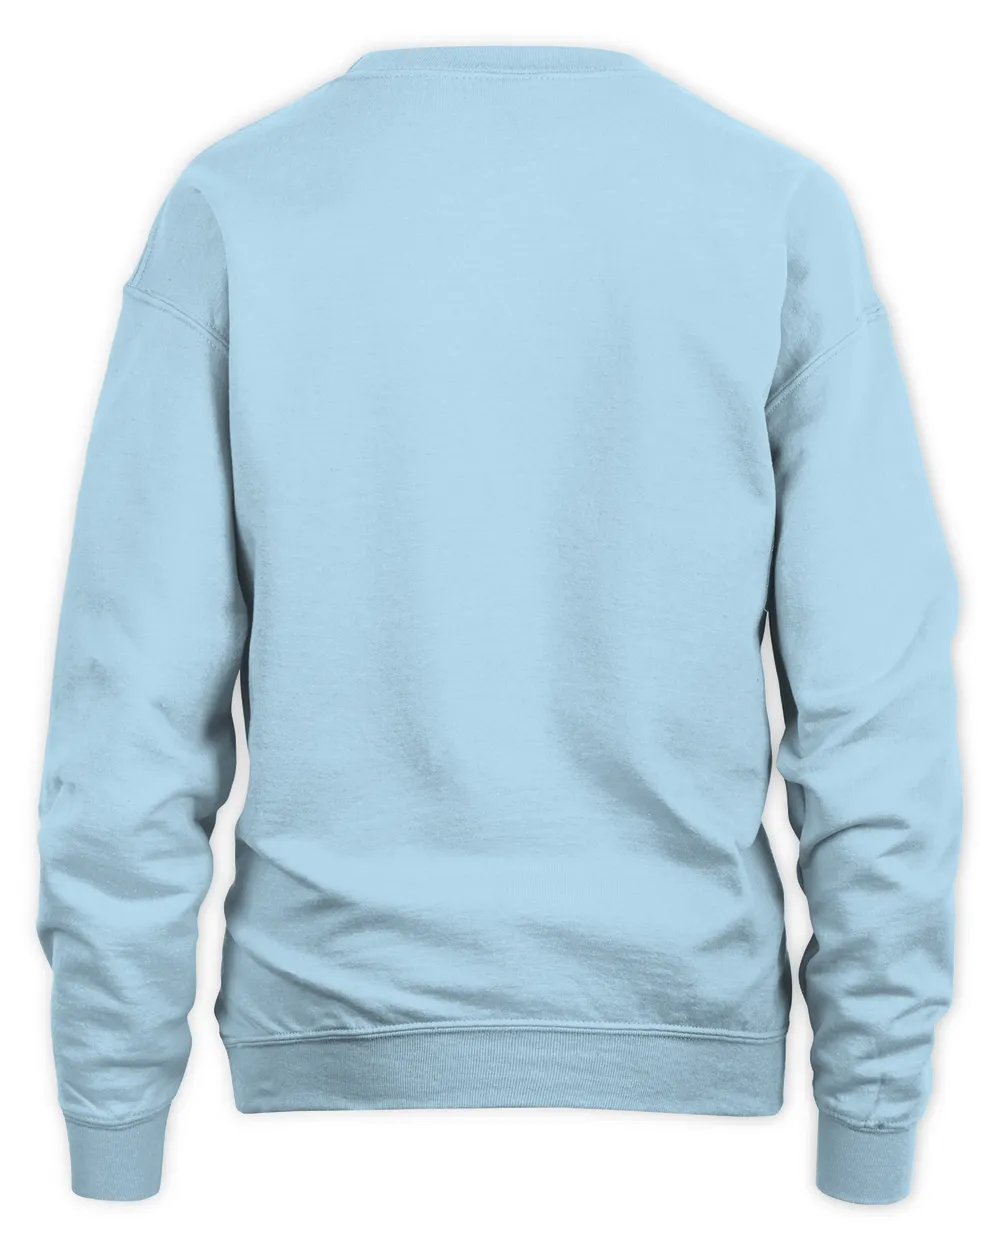 Plus Size Frog Print Sweatshirt, Casual Long Sleeve O-Neck Sweatshirt